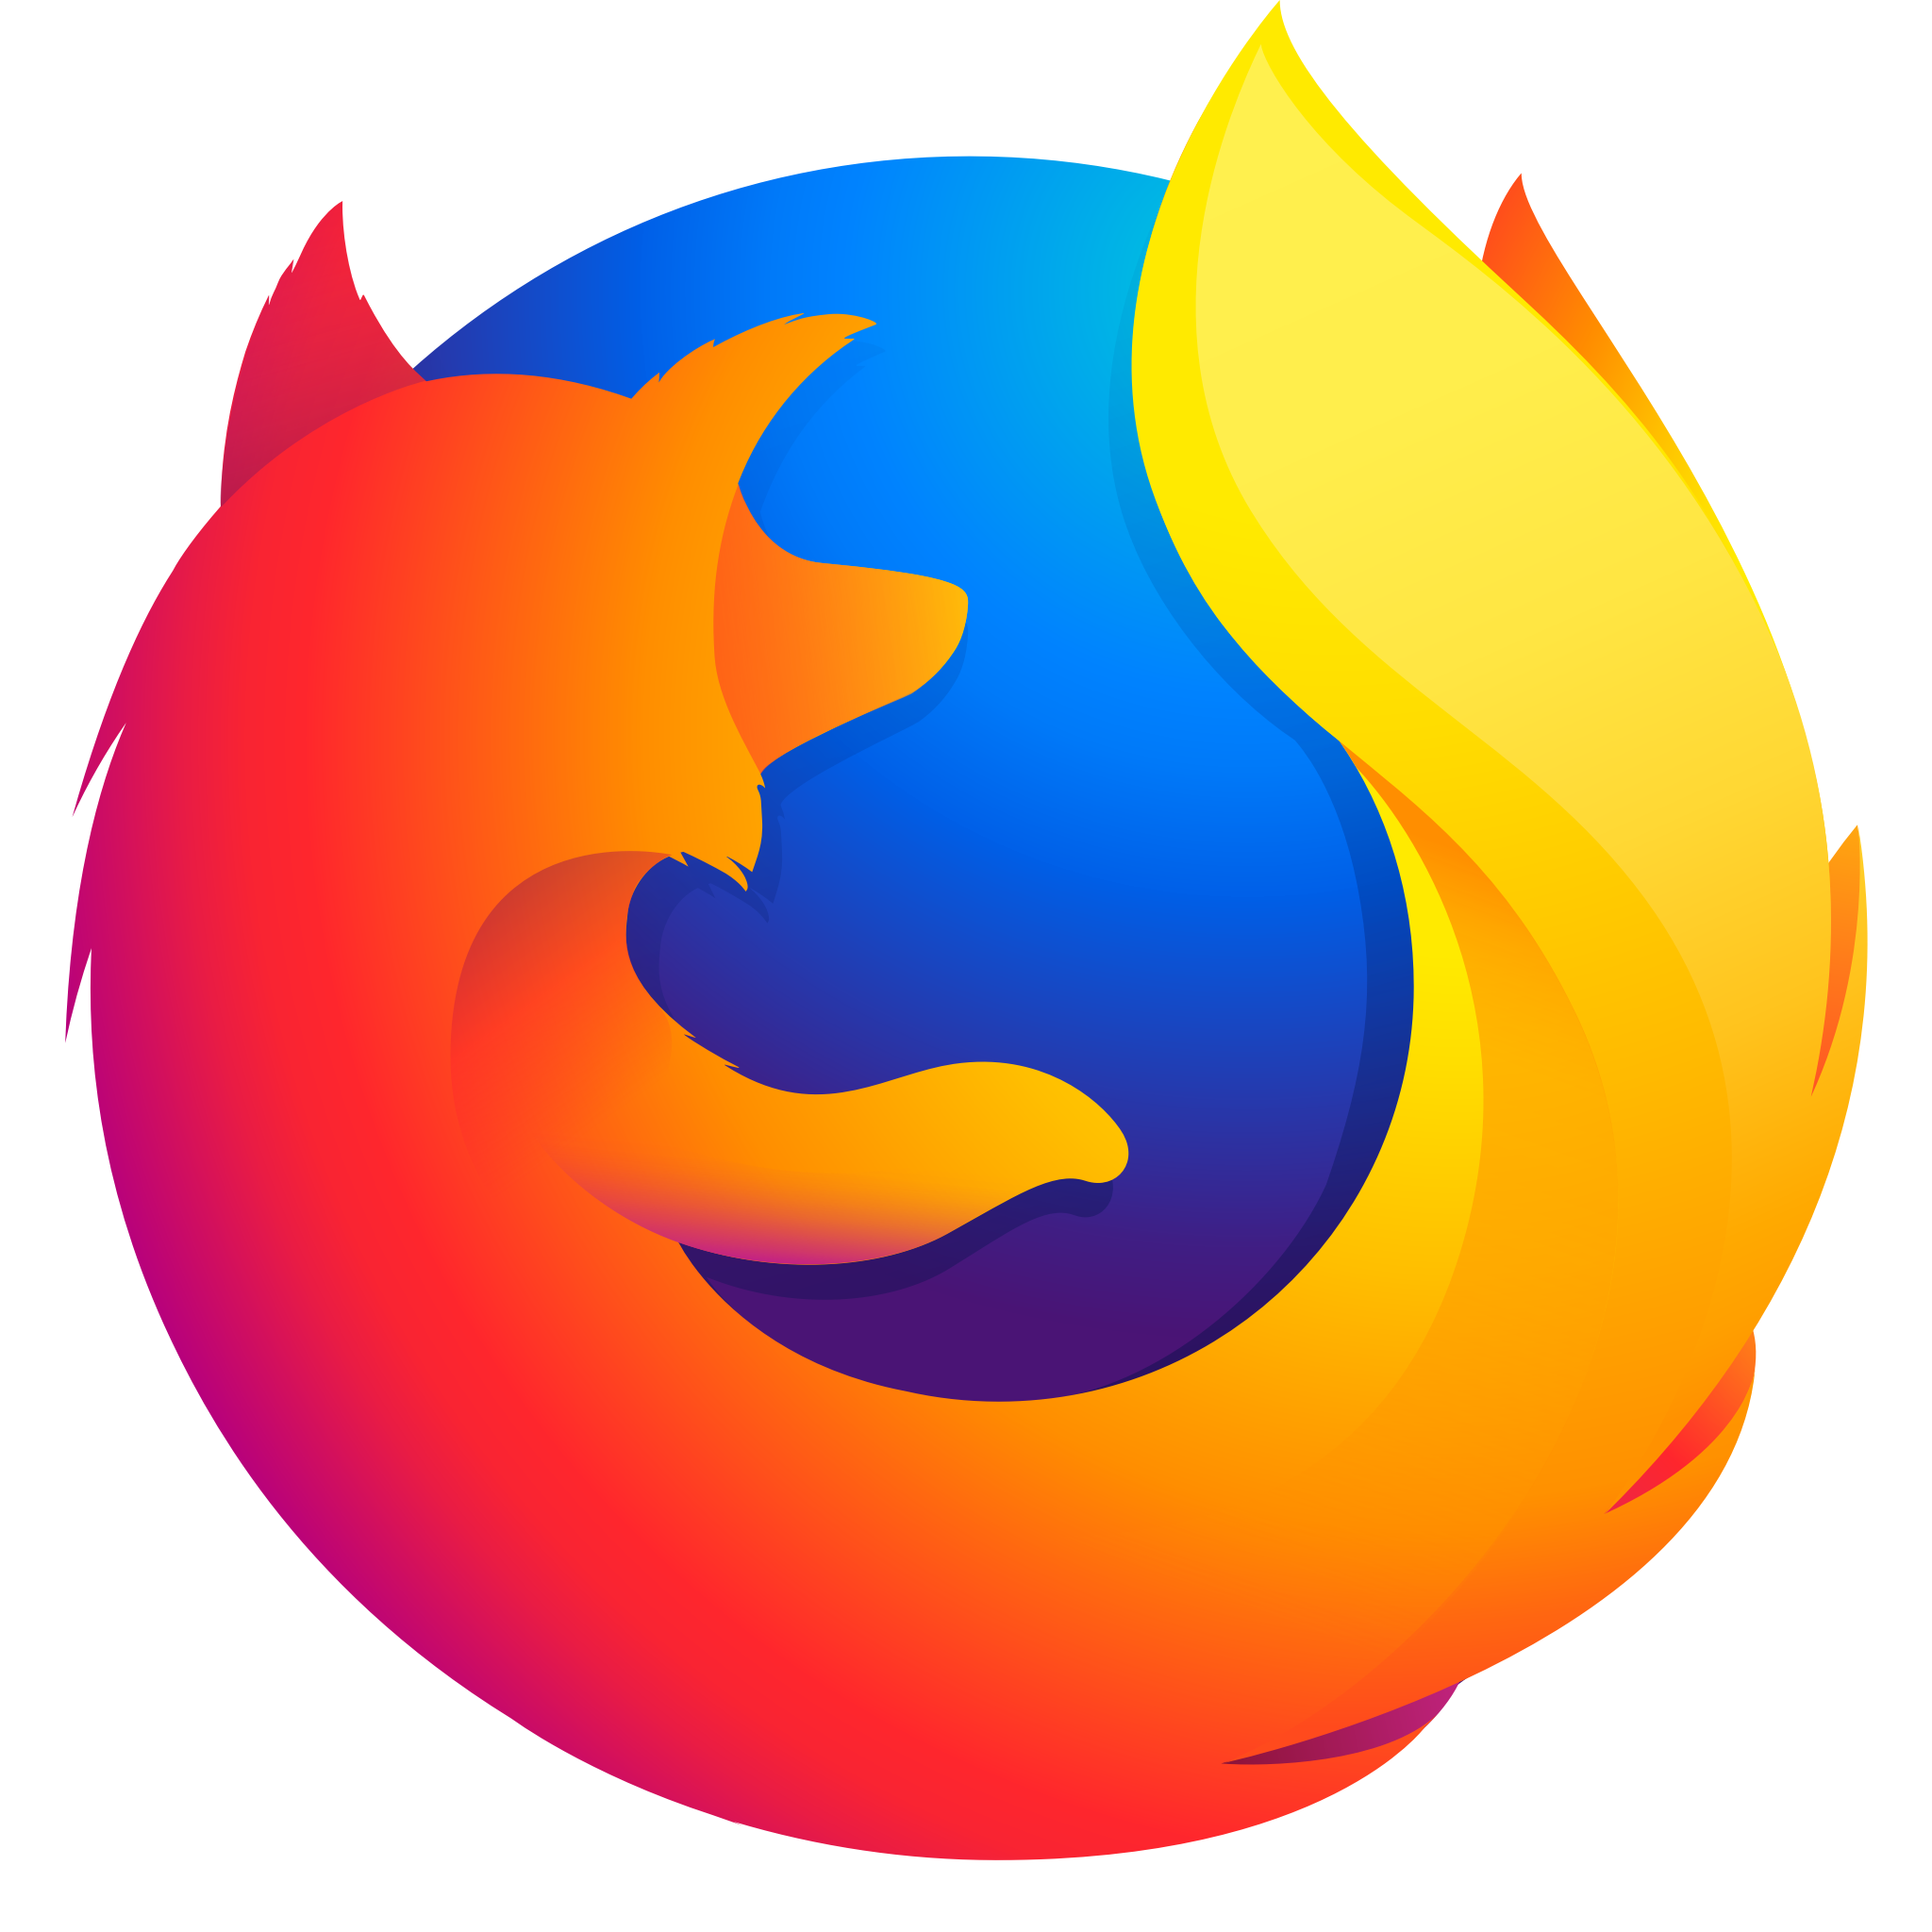 Firefox 120